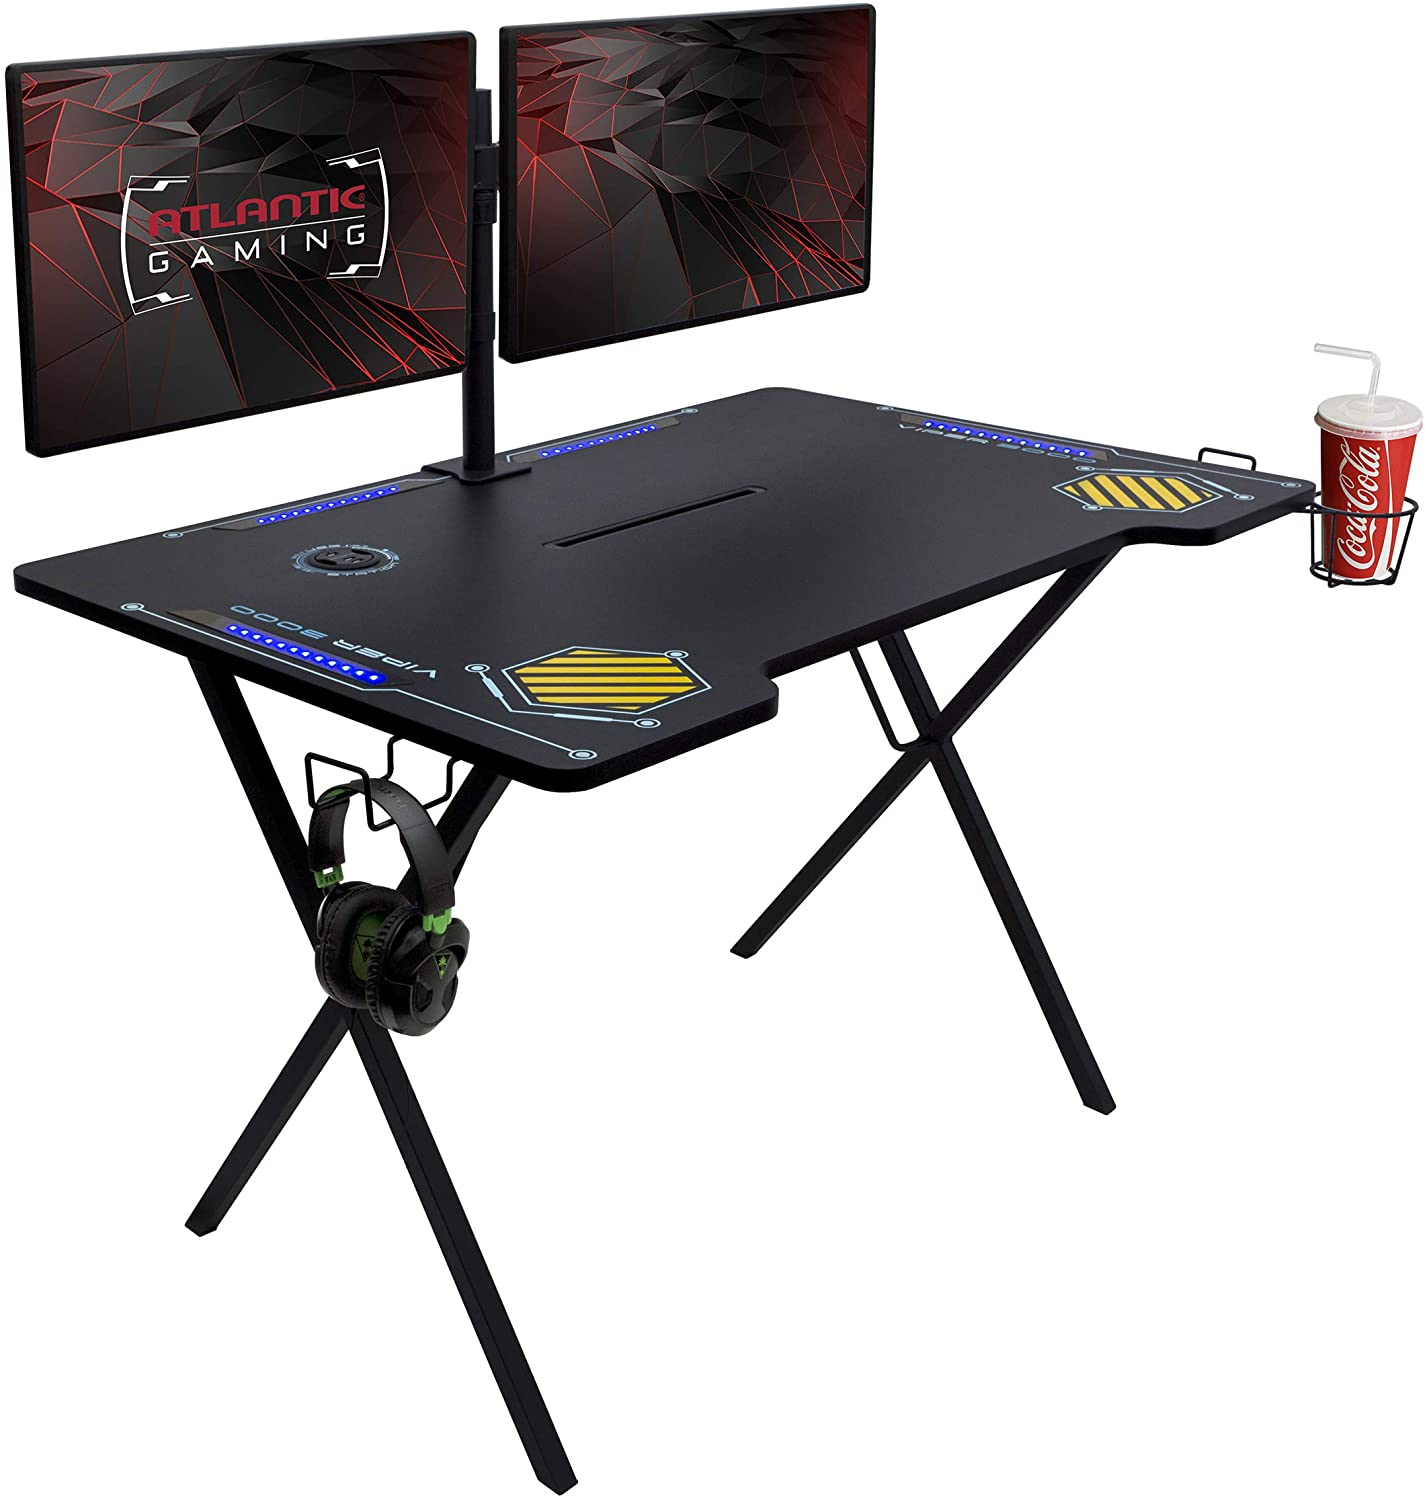 Atlantic Gaming Desk Viper 3000 $111.45